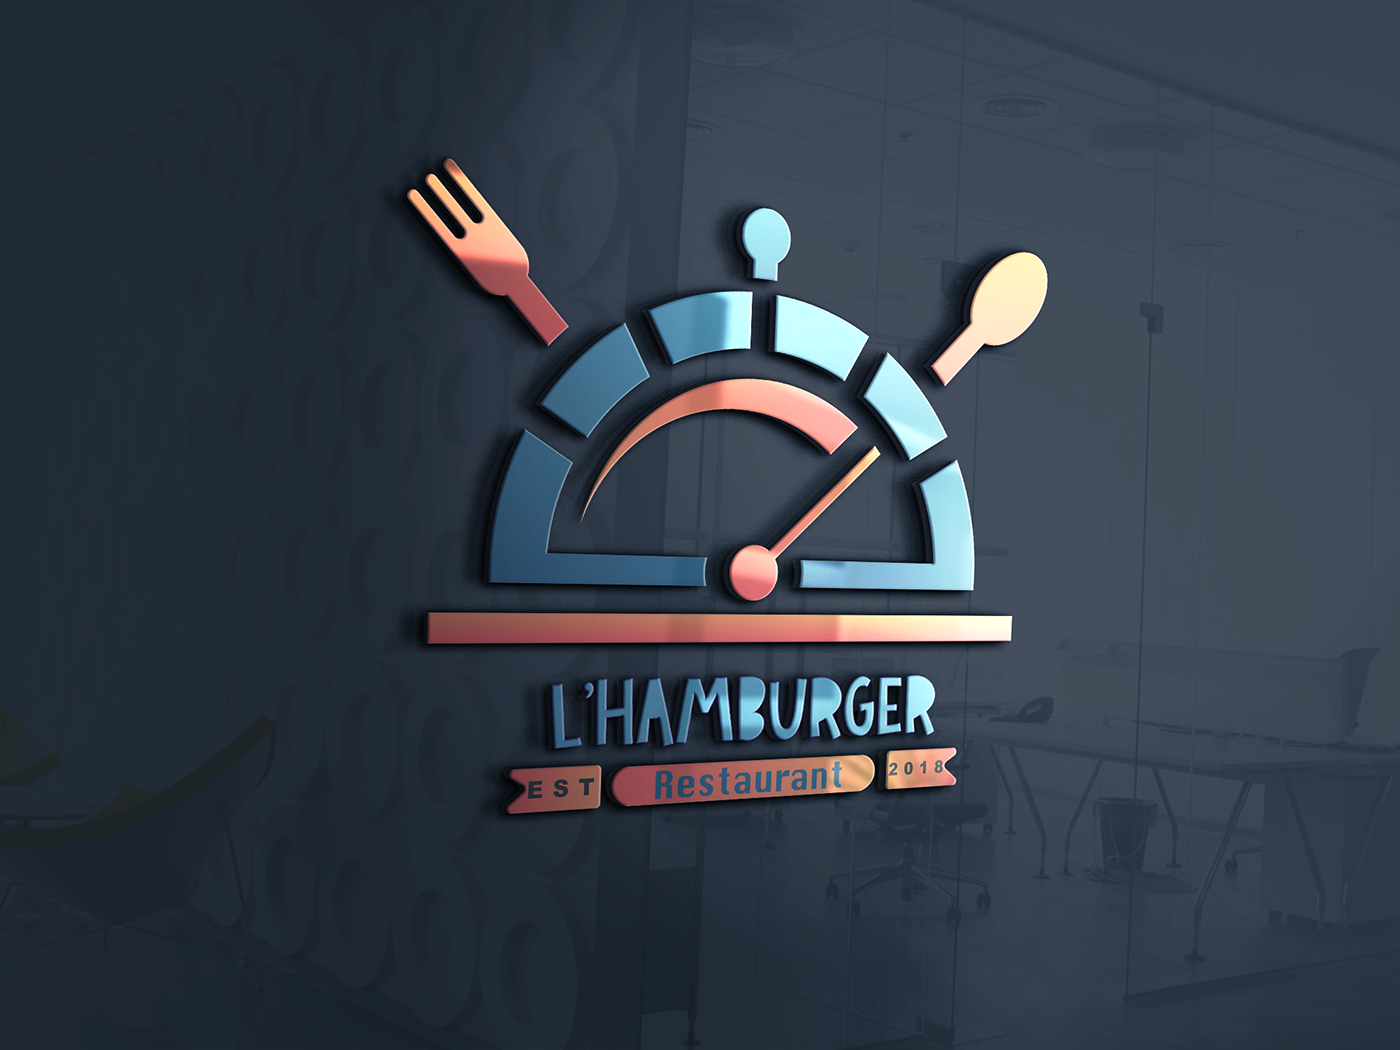 L'HAMBURGER restaurant fastfood social media logodesign